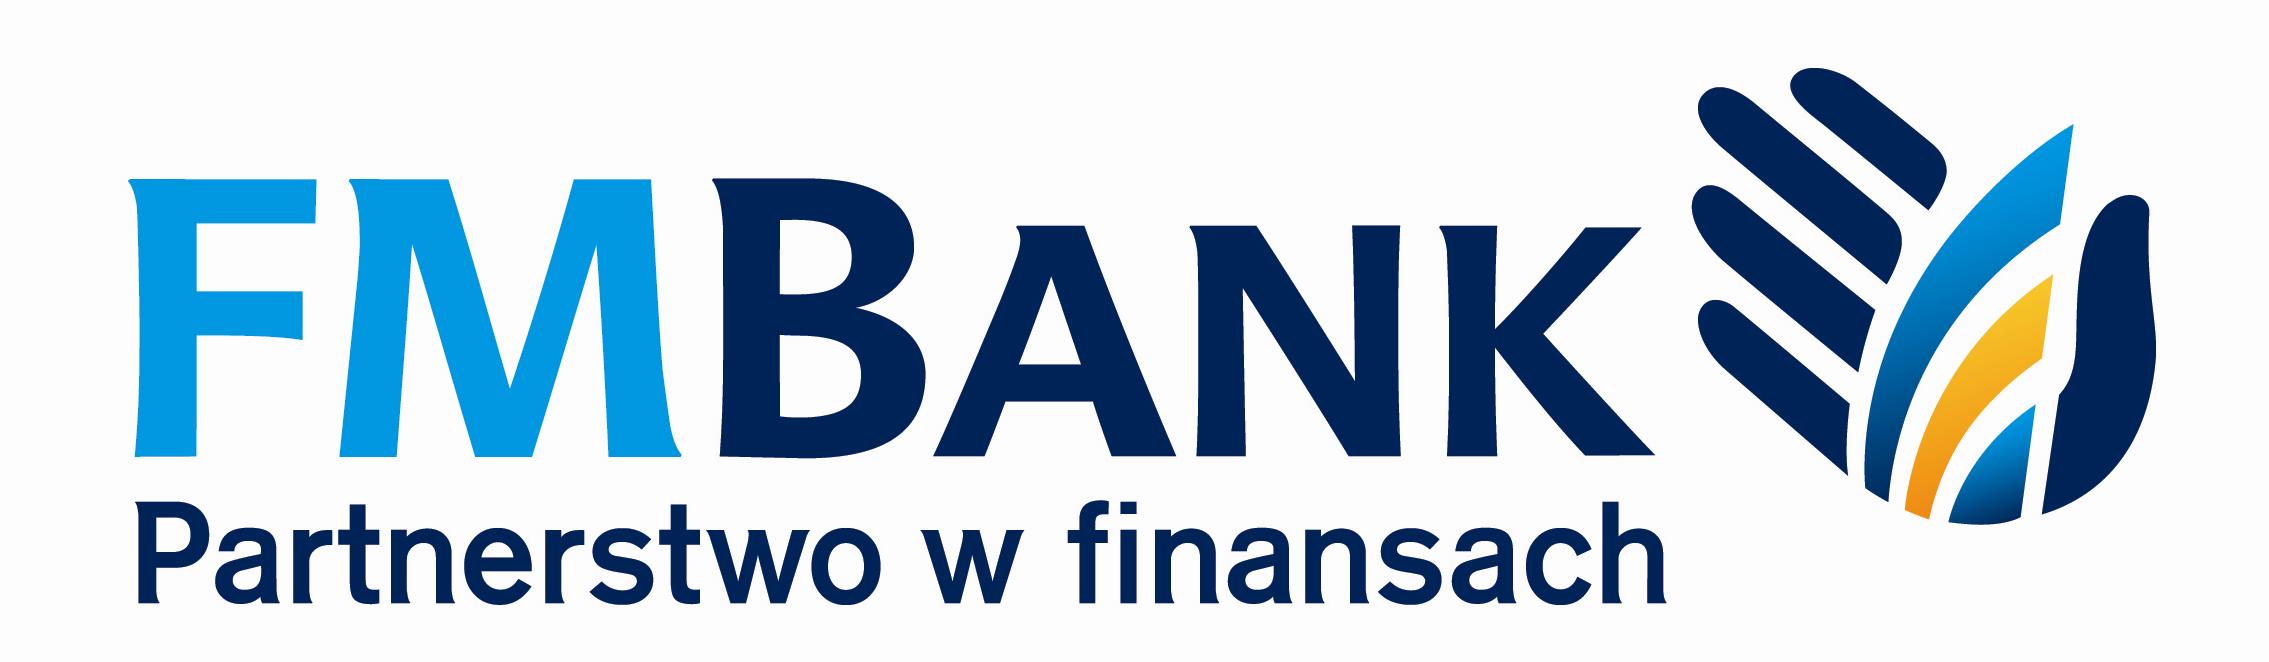 fm_bank_logo